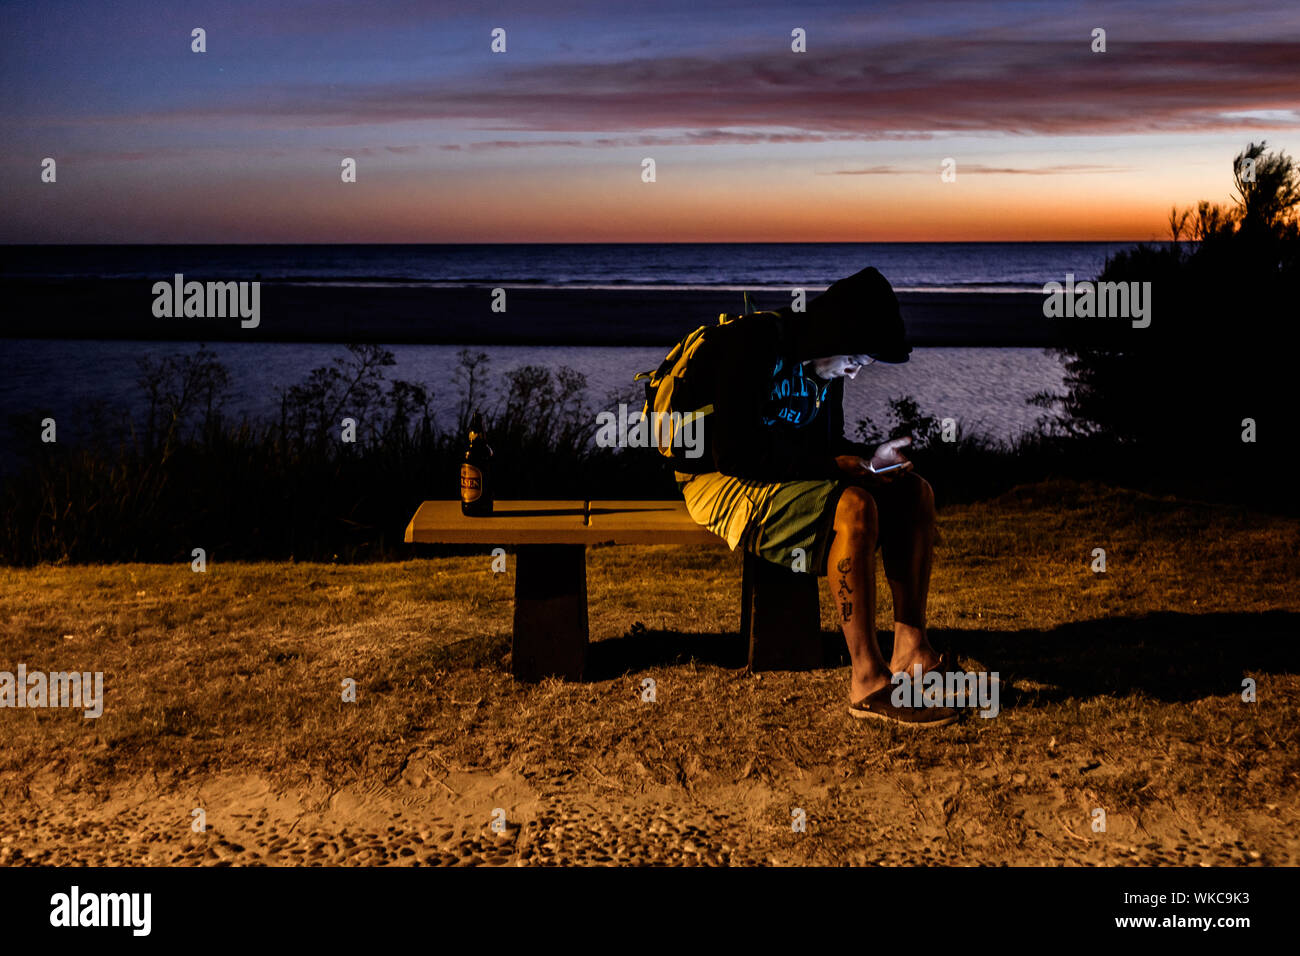 Uruguay: Uruguay, La Floresta, kleine Stadt und Badeort an der Costa de Oro (Goldene Küste). In der Dämmerung, ein kleiner Junge ist auf einer Bank sitzt, mit Blick auf den Rio de Stockfoto